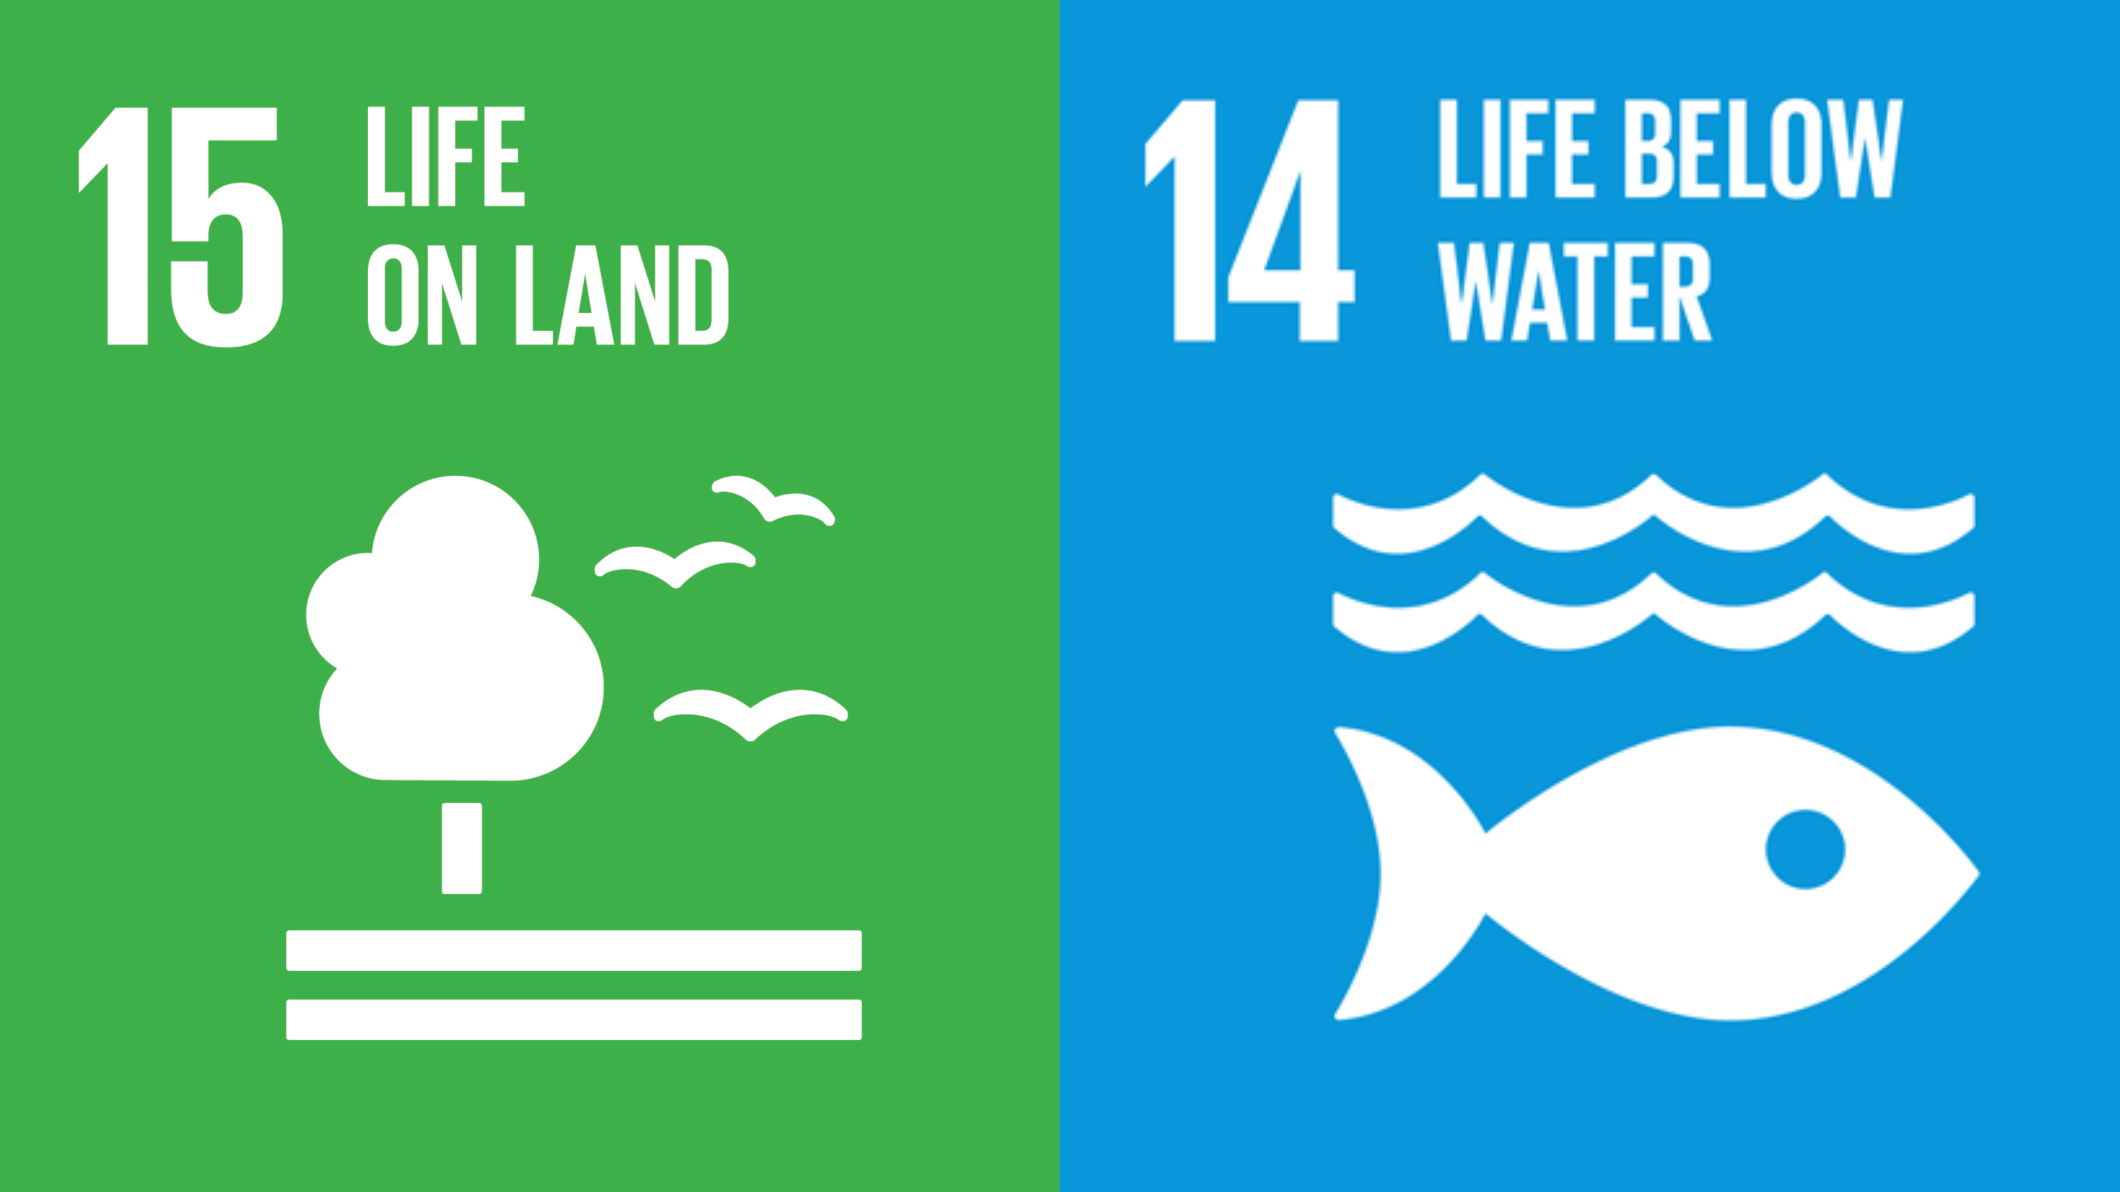 Into the water below. Life below Water. Life below Water цели. Life below Water presentation. SDG Life below Water photo.